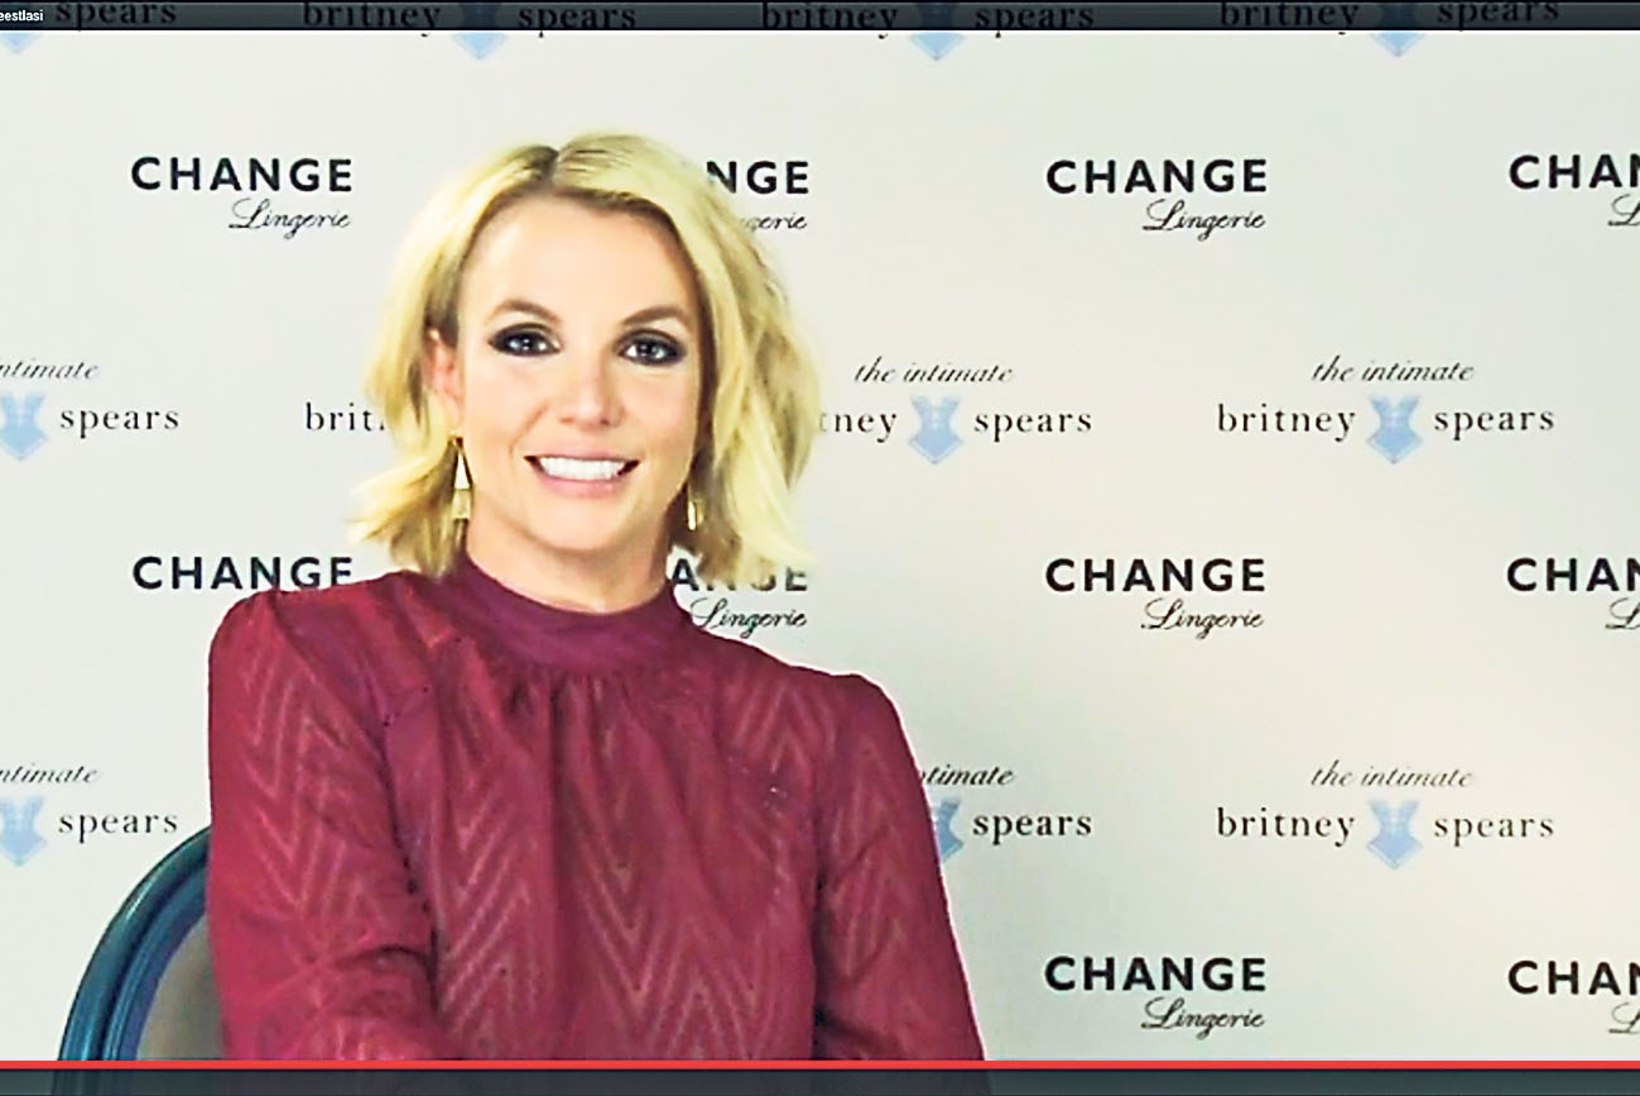 "Viskasime nalja, et Britney on ilus nagu vahanukk!"